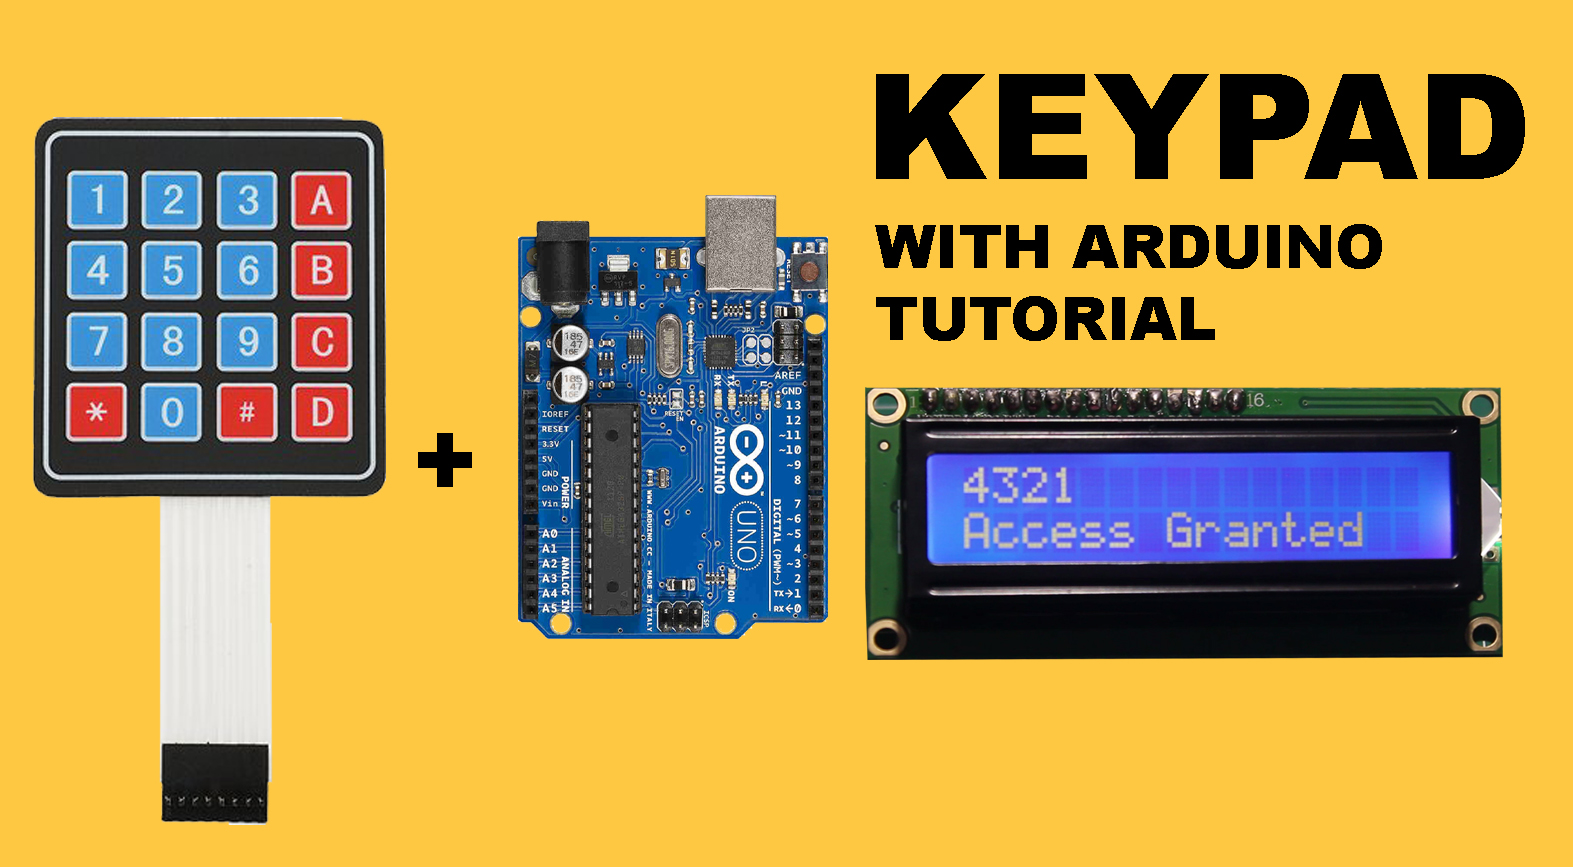 keypad with arduino tutorial